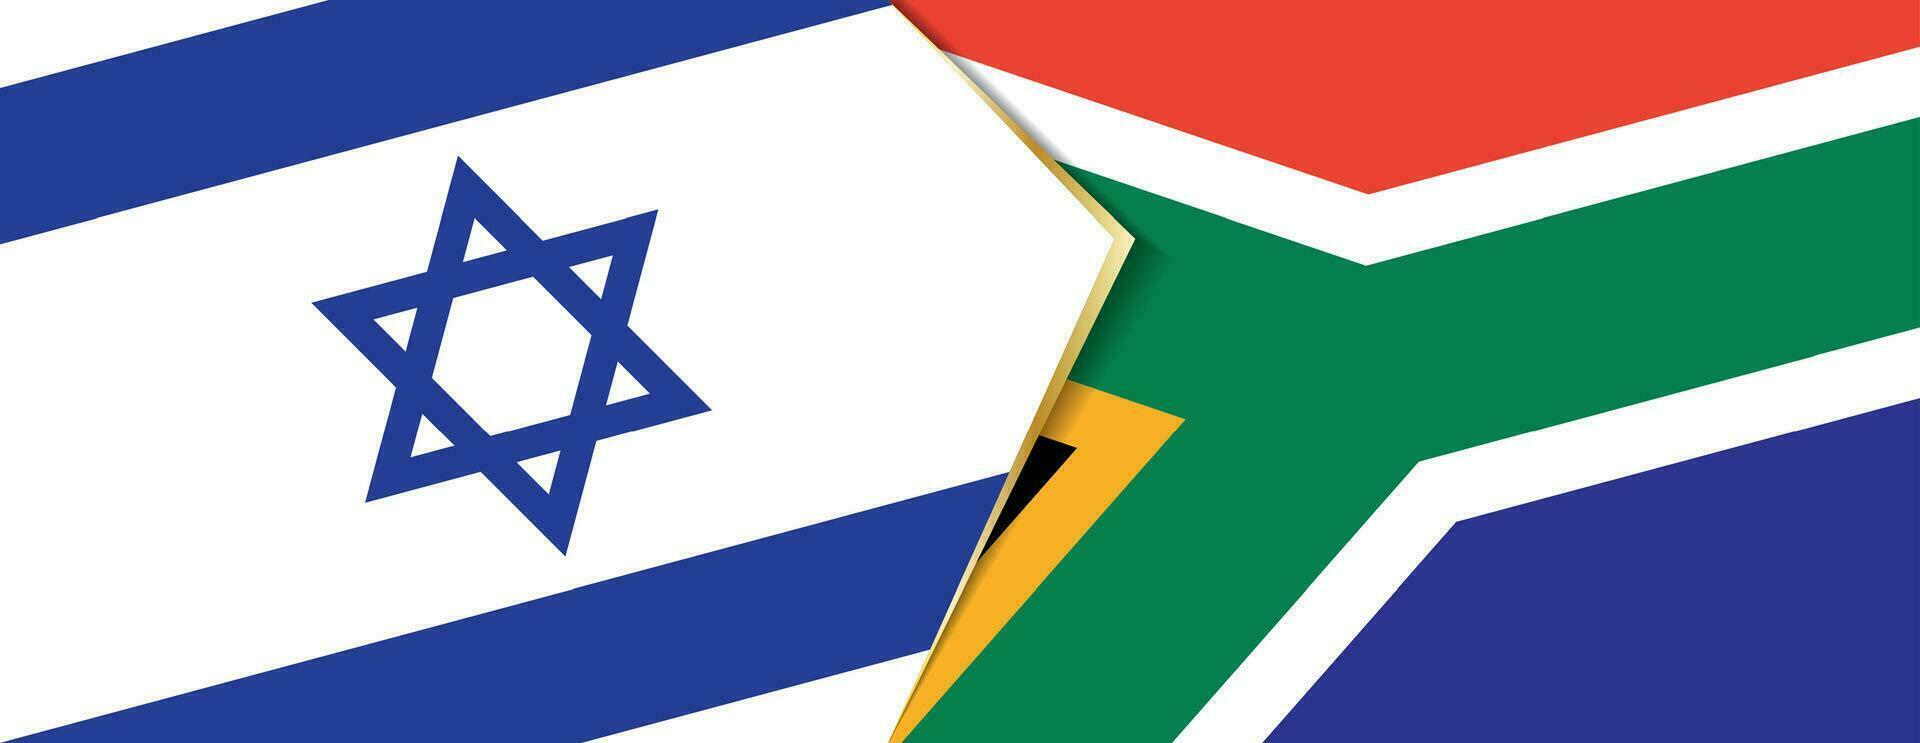 Israel y sur África banderas, dos vector banderas